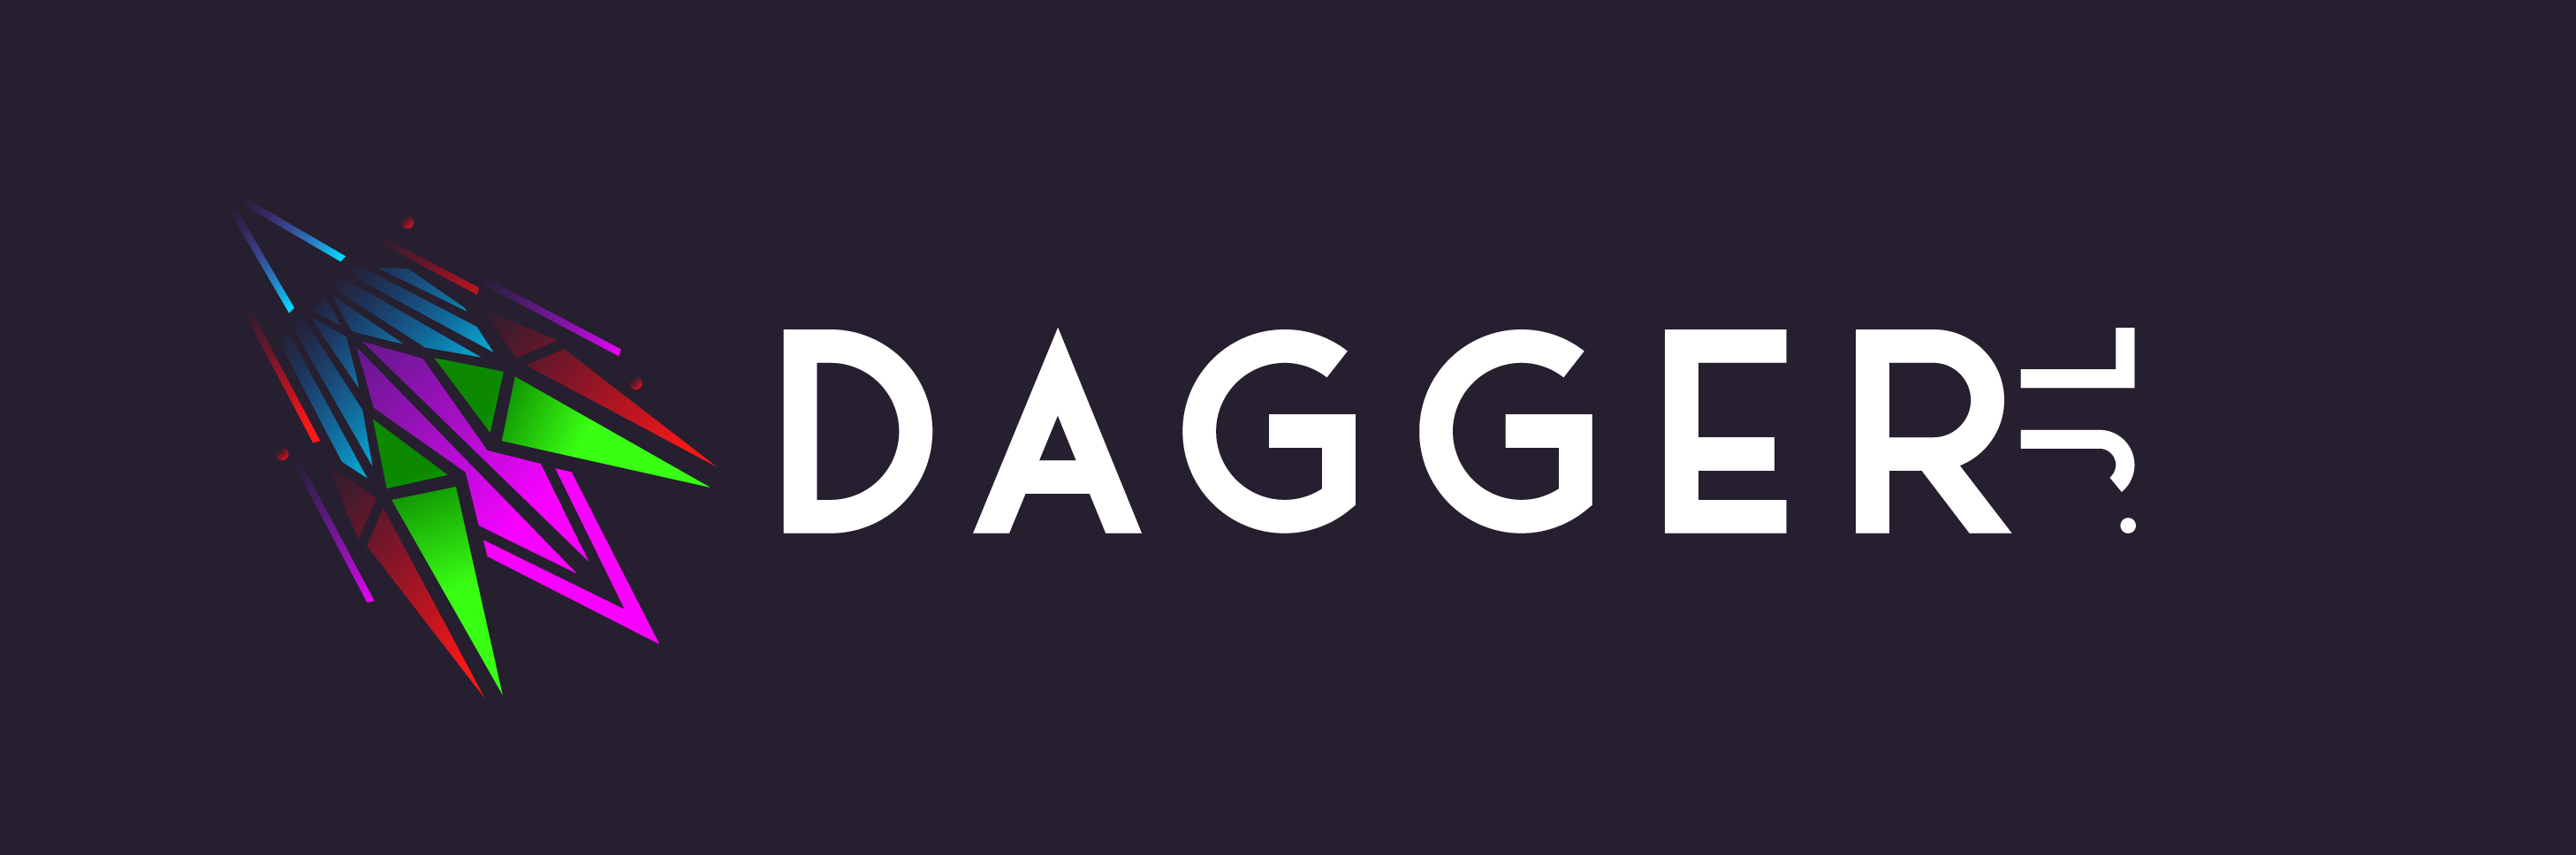 Dagger.jl Logo